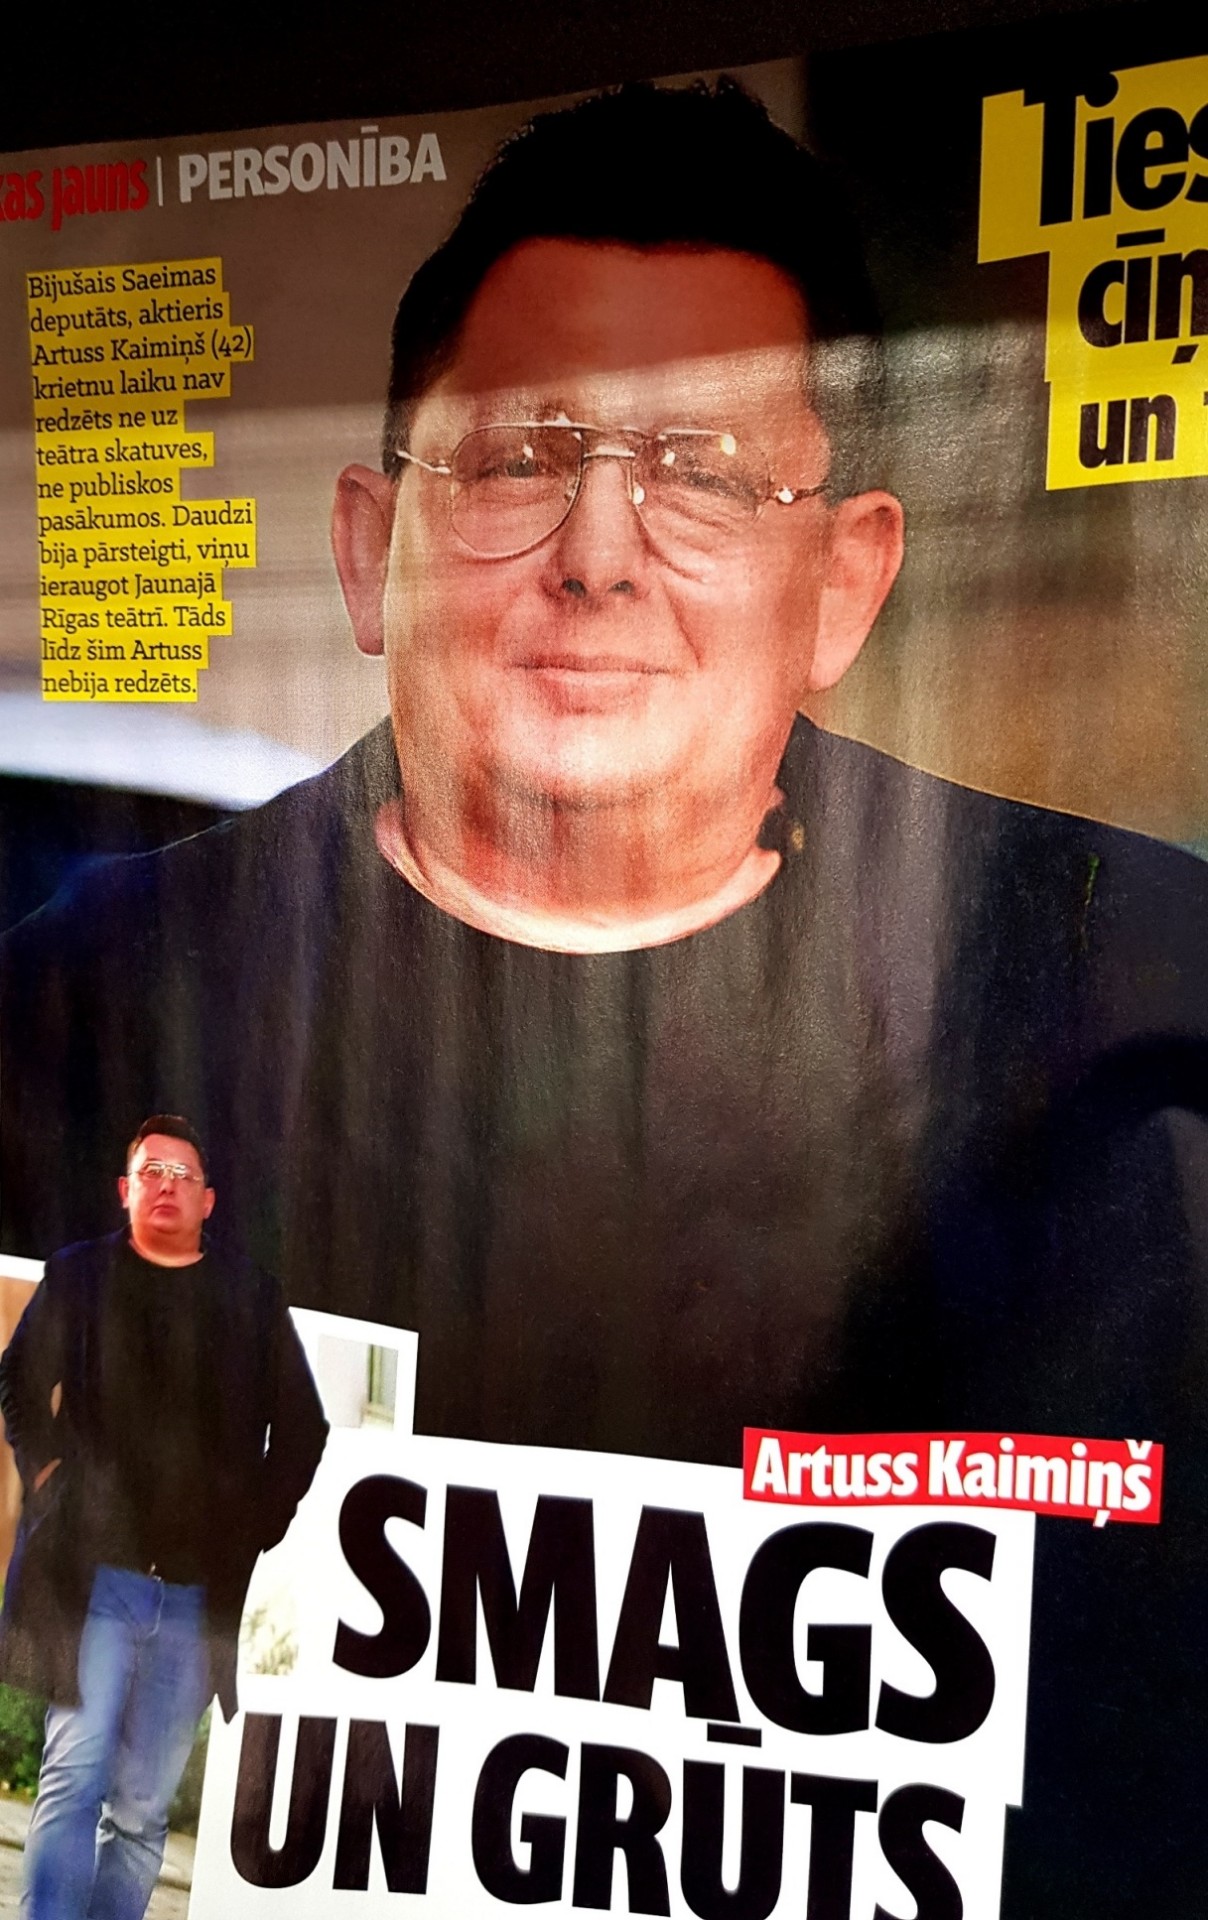 Rijīgs gads! Bijušais Saeimas deputāts Artuss Kaimiņš kļuvis resns līdz nepazīšanai. FOTO (Bilde 2)